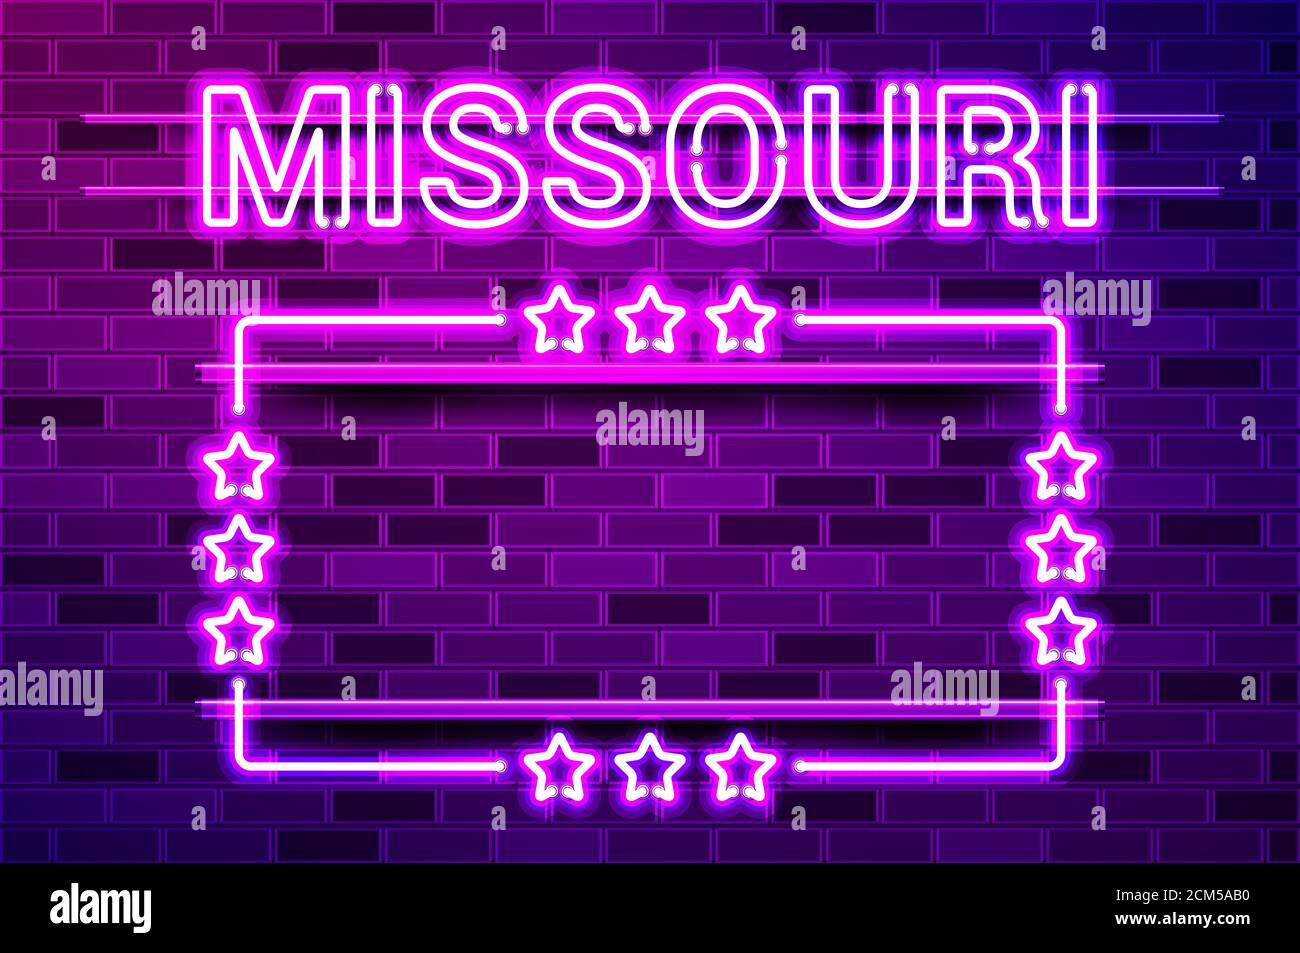 Missouri US State leuchtend lila Neon Schriftzug und ein rechteckiger Rahmen mit Sternen. Realistische Darstellung. Lila Ziegelwand, violette Glut, Metallgriff Stockfoto